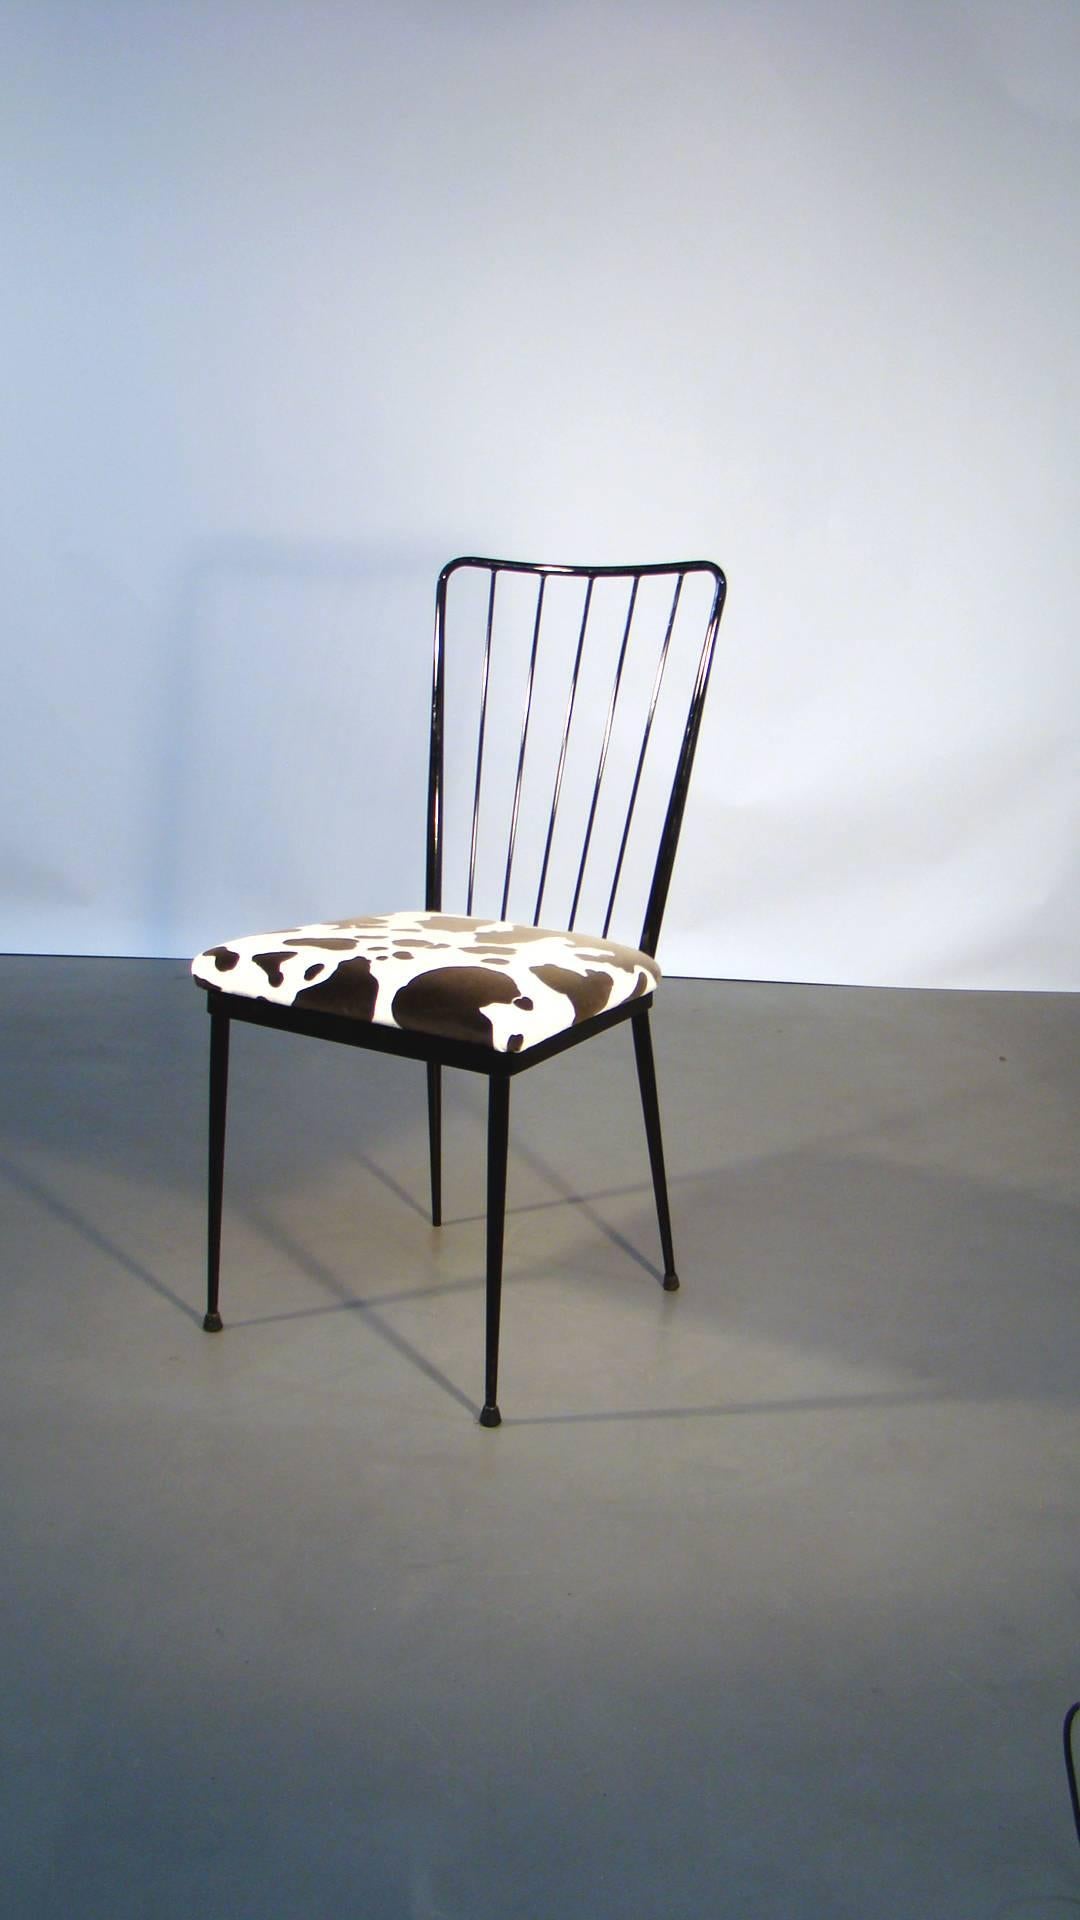 Vier Stühle aus lackiertem Metall im Stil von Colette Gueden, um 1960.
guter Zustand, die Beschichtung ist abgenutzt und verblasst